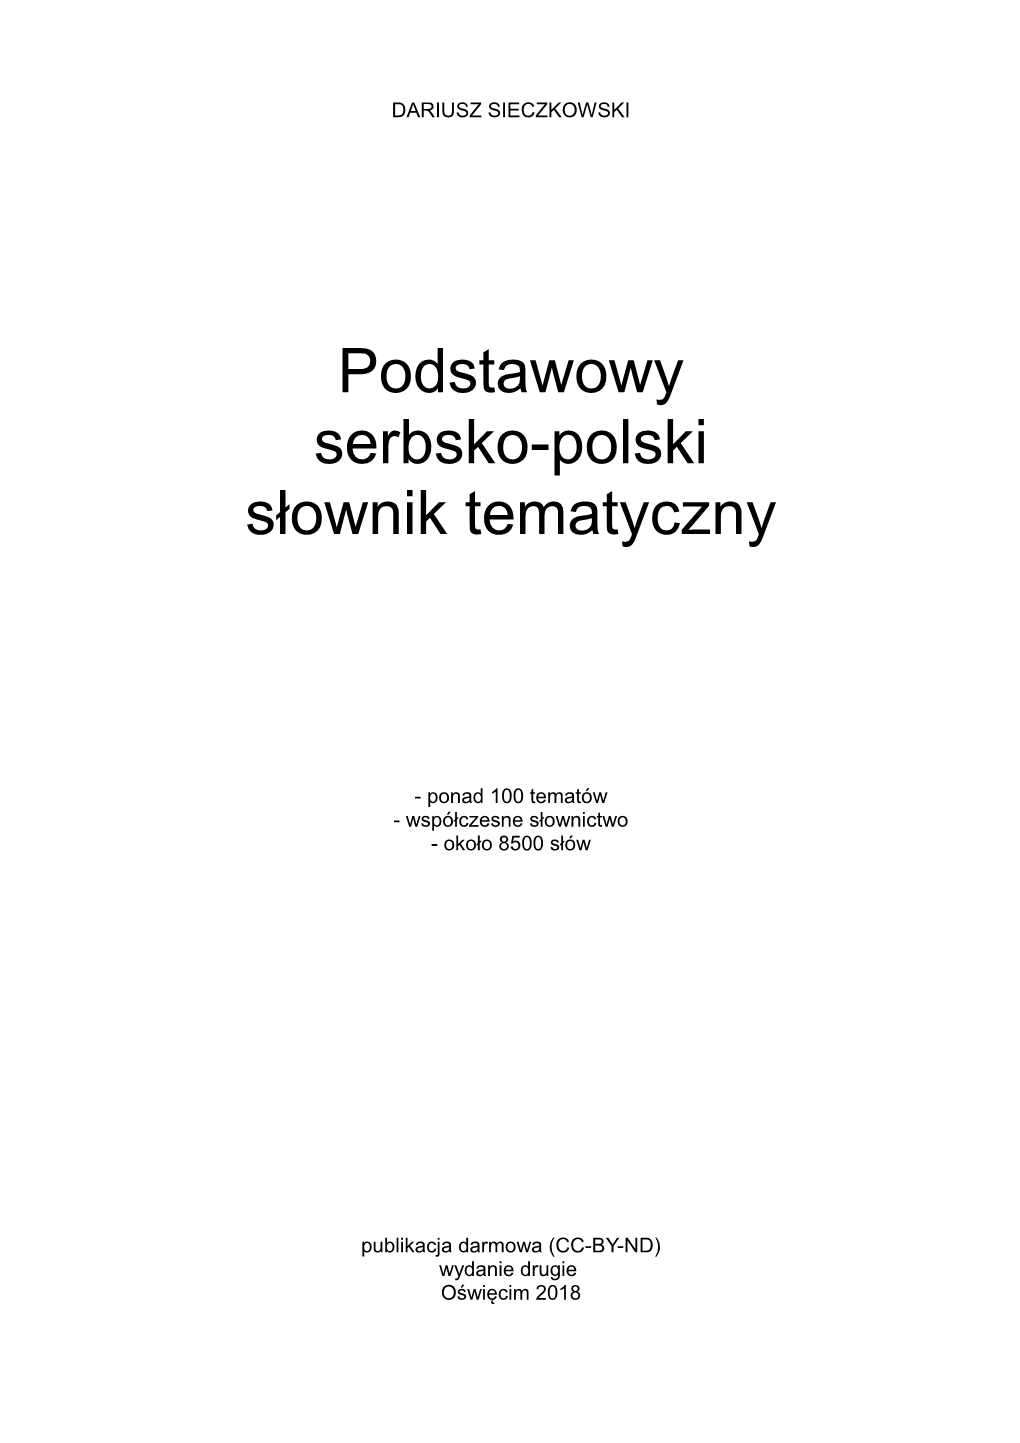 Podstawowy Słownik Tematyczny Serbsko-Polski" 2